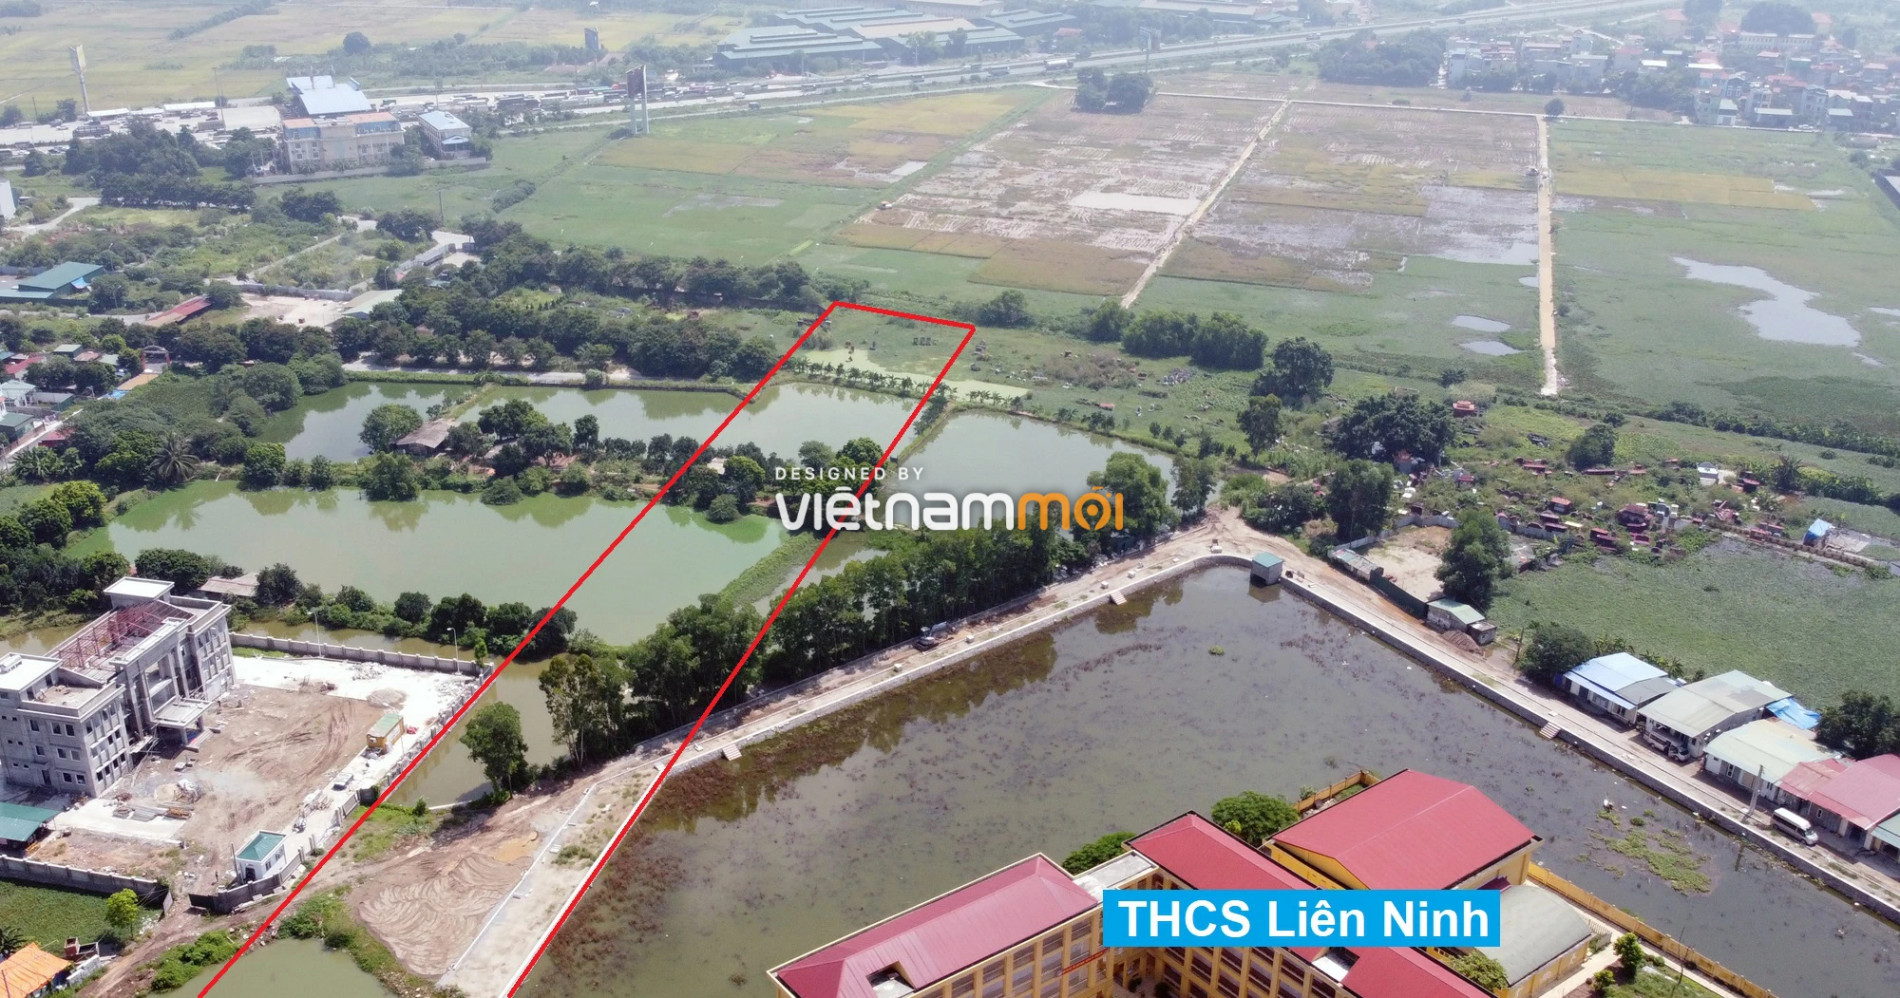 Những khu đất sắp thu hồi để mở đường ở xã Liên Ninh, Thanh Trì, Hà Nội (phần 4) - Ảnh 11.